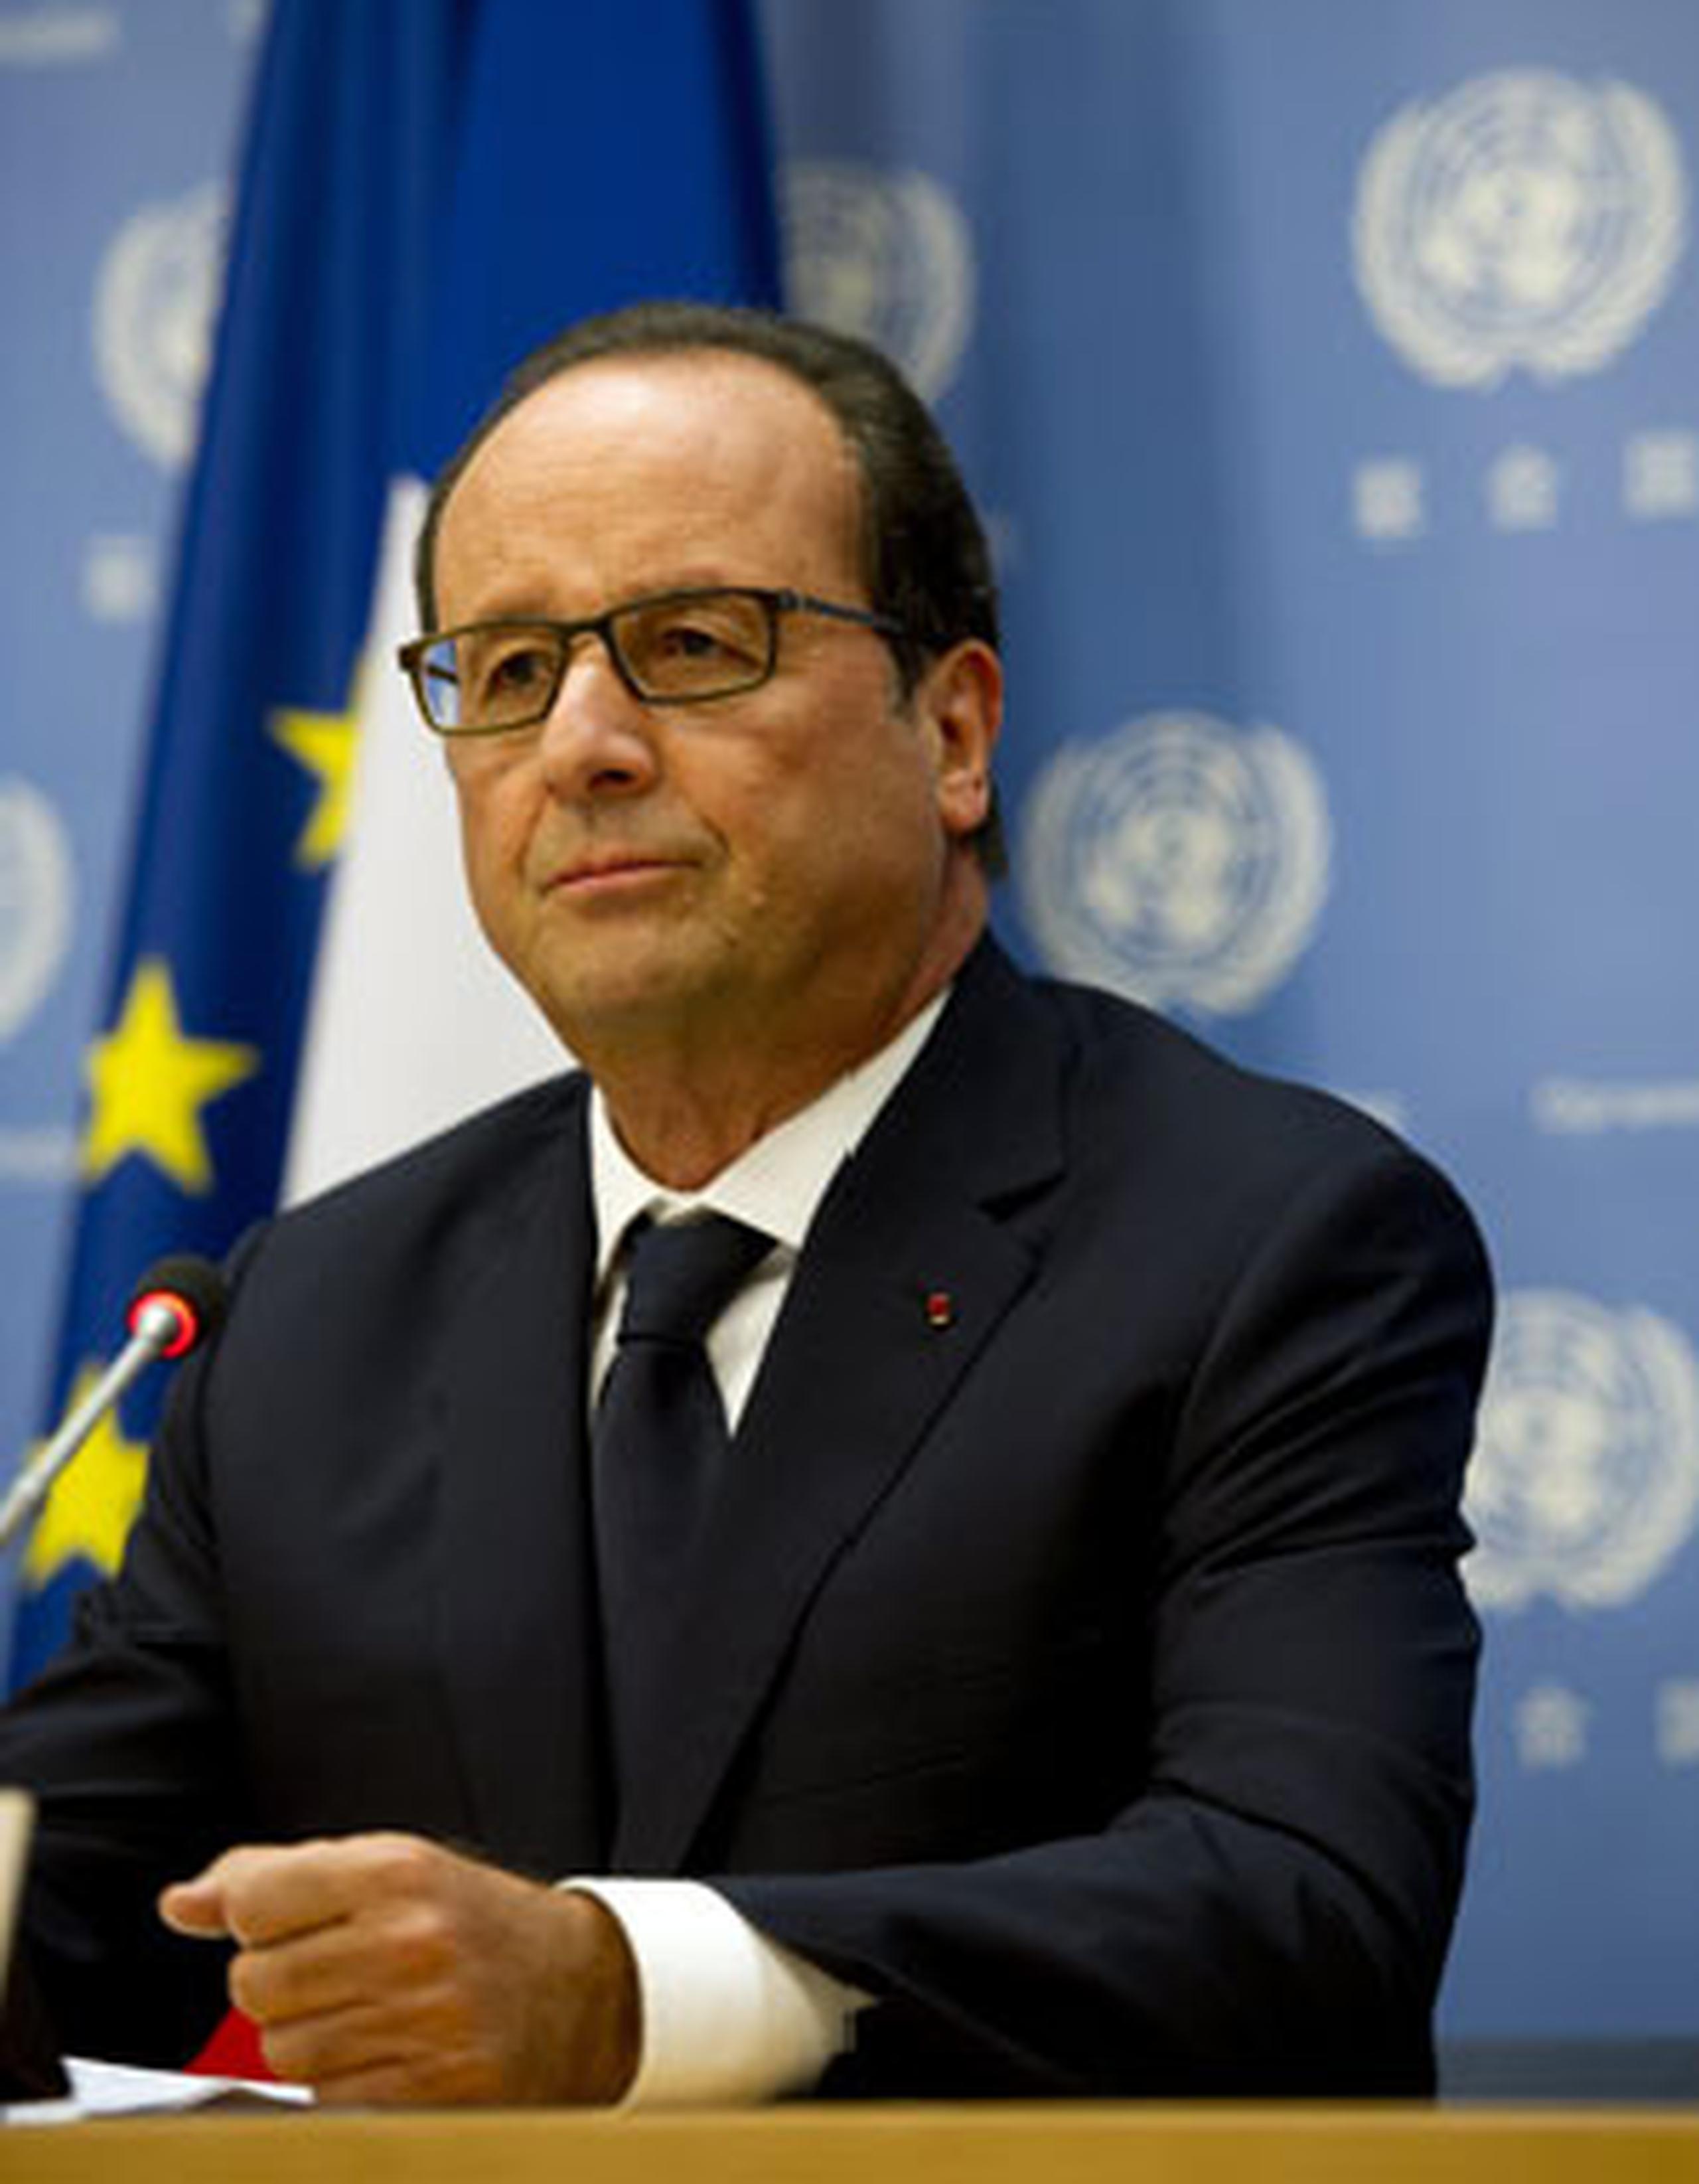 El presidente francés, François Hollande afirmó hoy que su país no cederá al ultimátum del grupo terrorista que ha secuestrado a un francés en Argelia y amenaza con degollarlo en unas horas, y que seguirá su apoyo militar a Irak contra los yihadistas del Estado Islámico.(EFE)